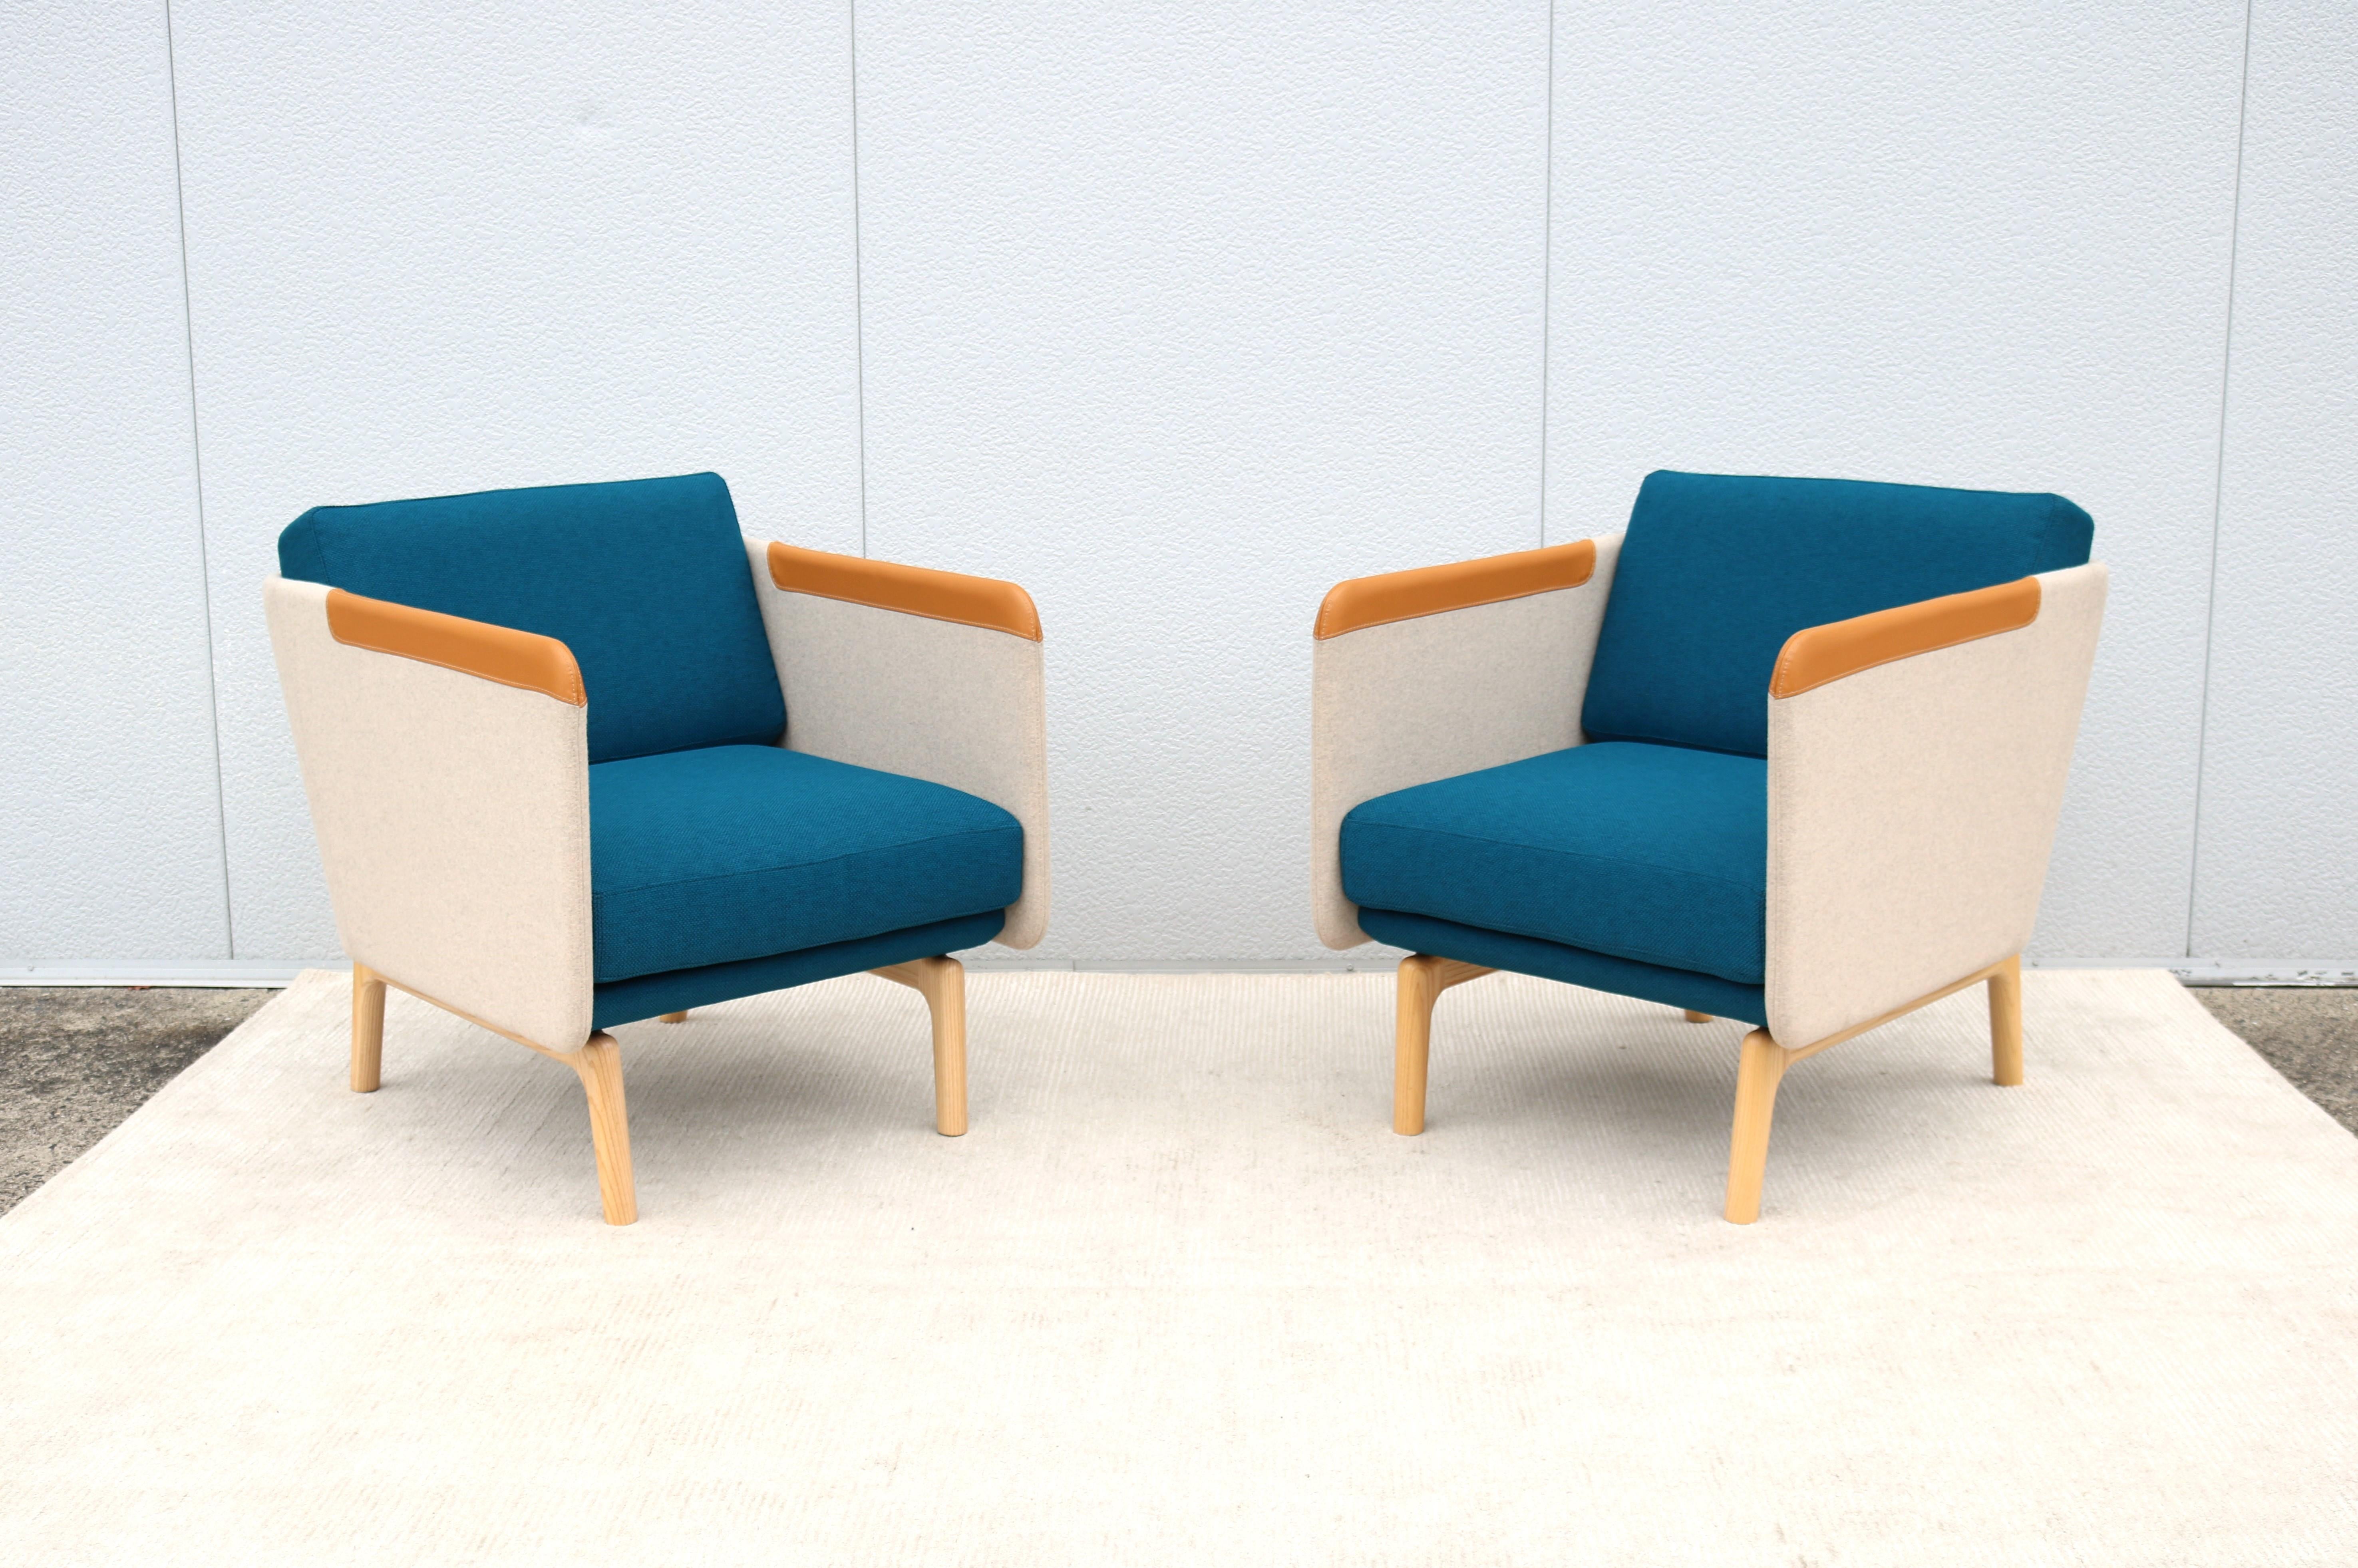 Ajoutez une touche de sophistication à votre maison ou à votre bureau avec cette fabuleuse paire de chaises longues Heya.
Conçu par Roger Webb pour OFS pour être confortable et soutenir. En japonais, Heya signifie (petite pièce) 
Ces chaises sont